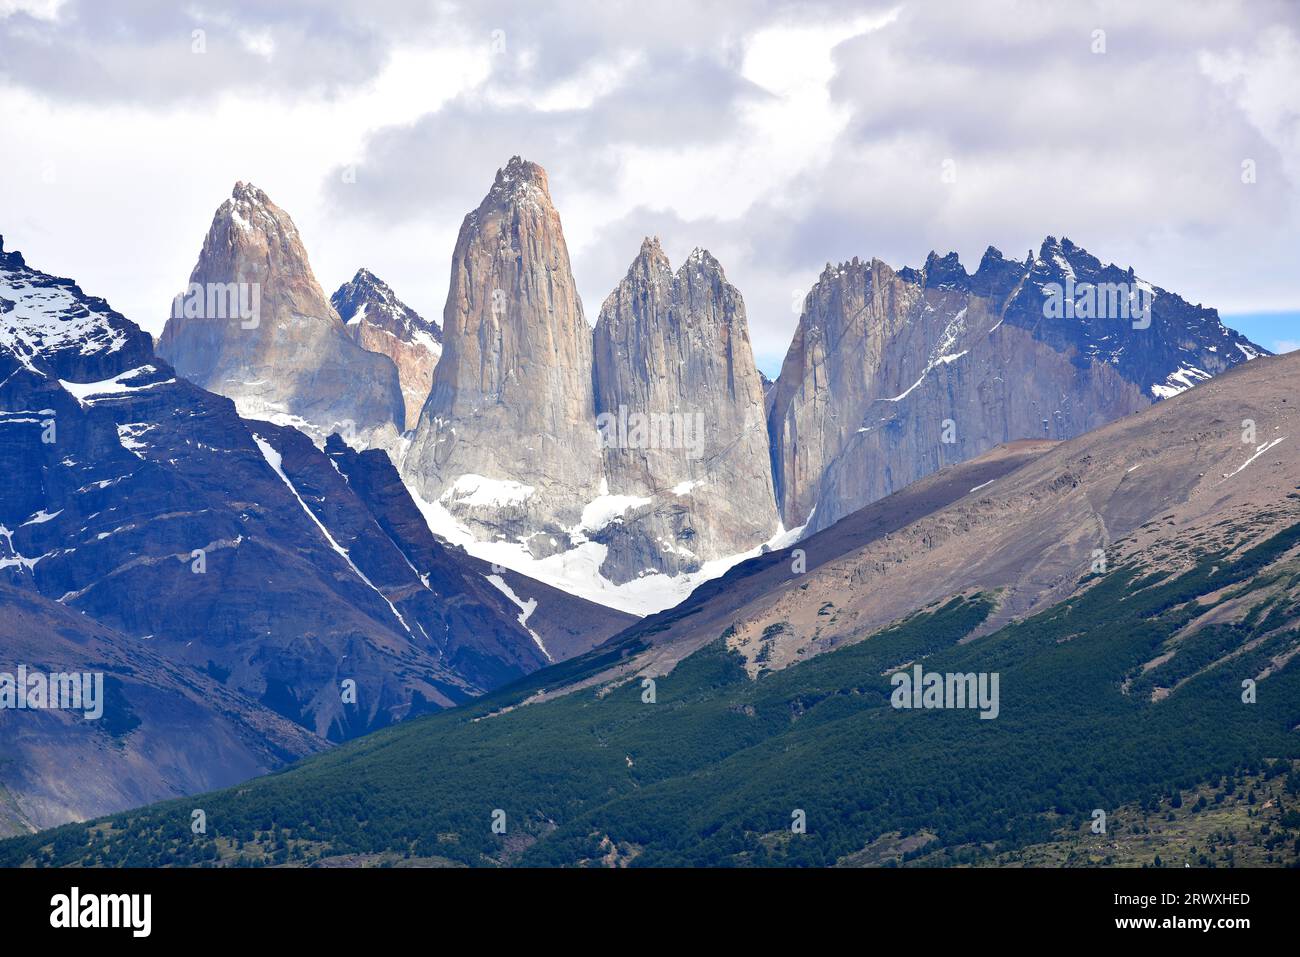 Parco nazionale Torres del Paine con Las Torres. Questa montagna è un laccolite, la roccia chiara è granito e la roccia scura è una roccia metamorfica. Provincia de U Foto Stock